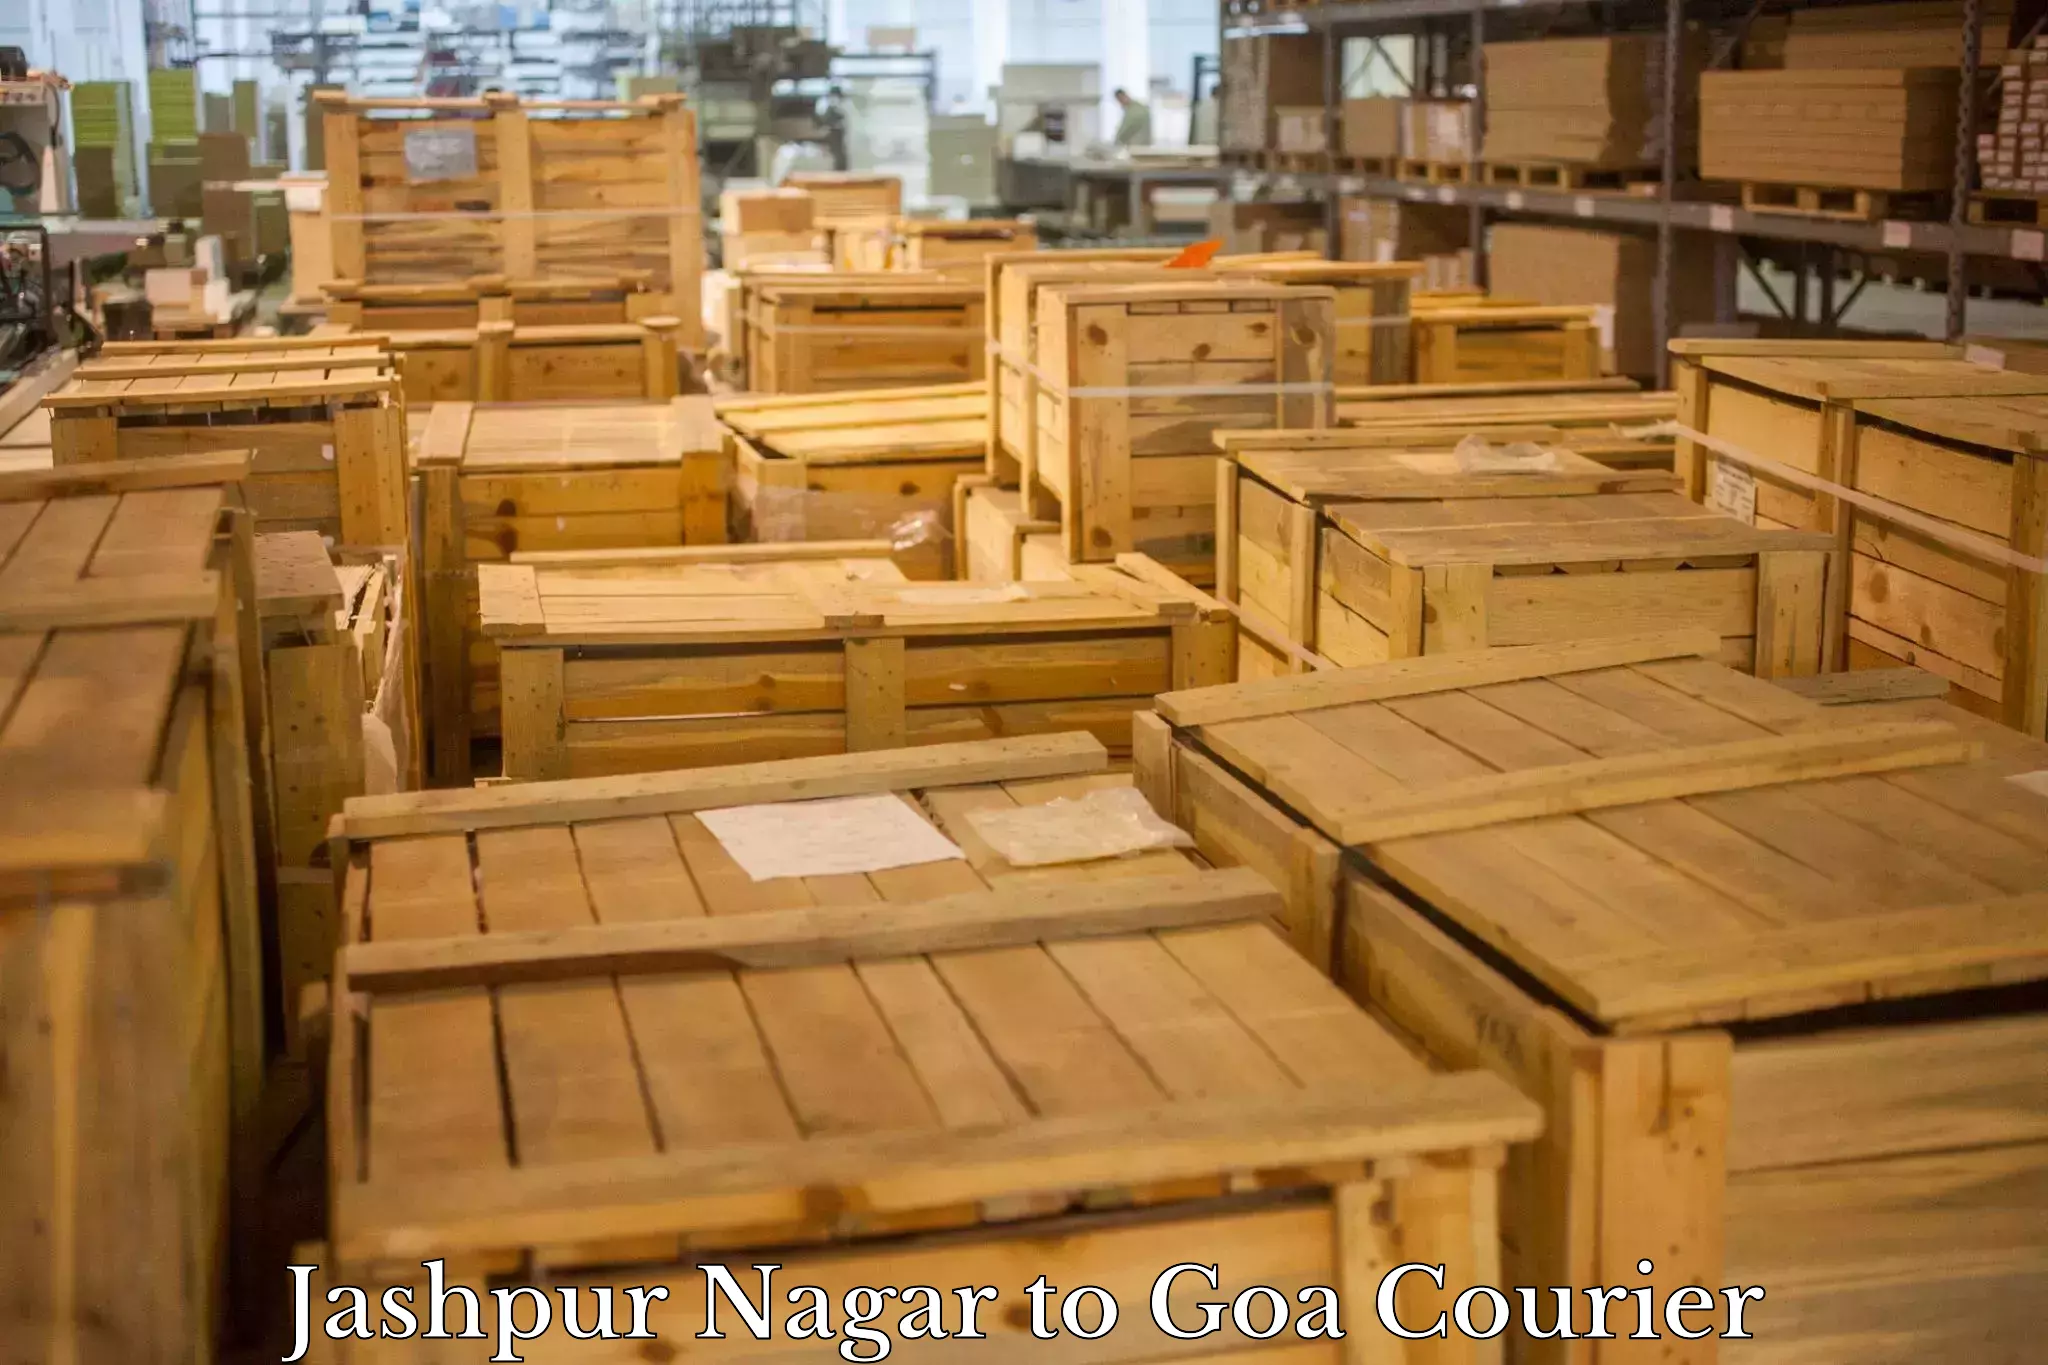 Cargo courier service Jashpur Nagar to South Goa